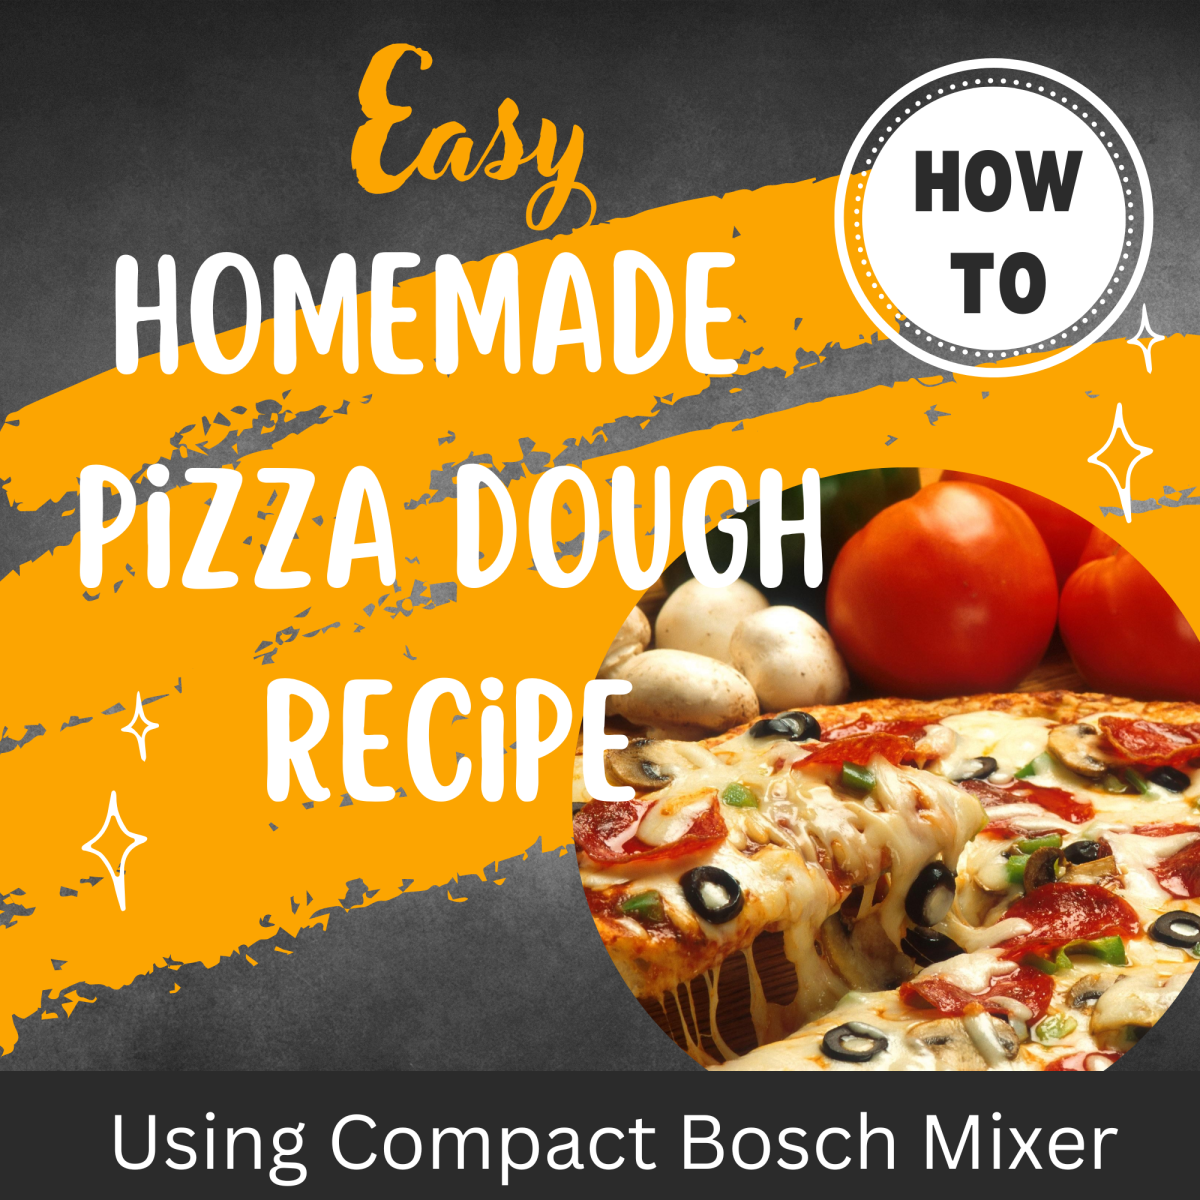 Easy Homemade Pizza Dough Recipe Using Compact Bosch Mixer